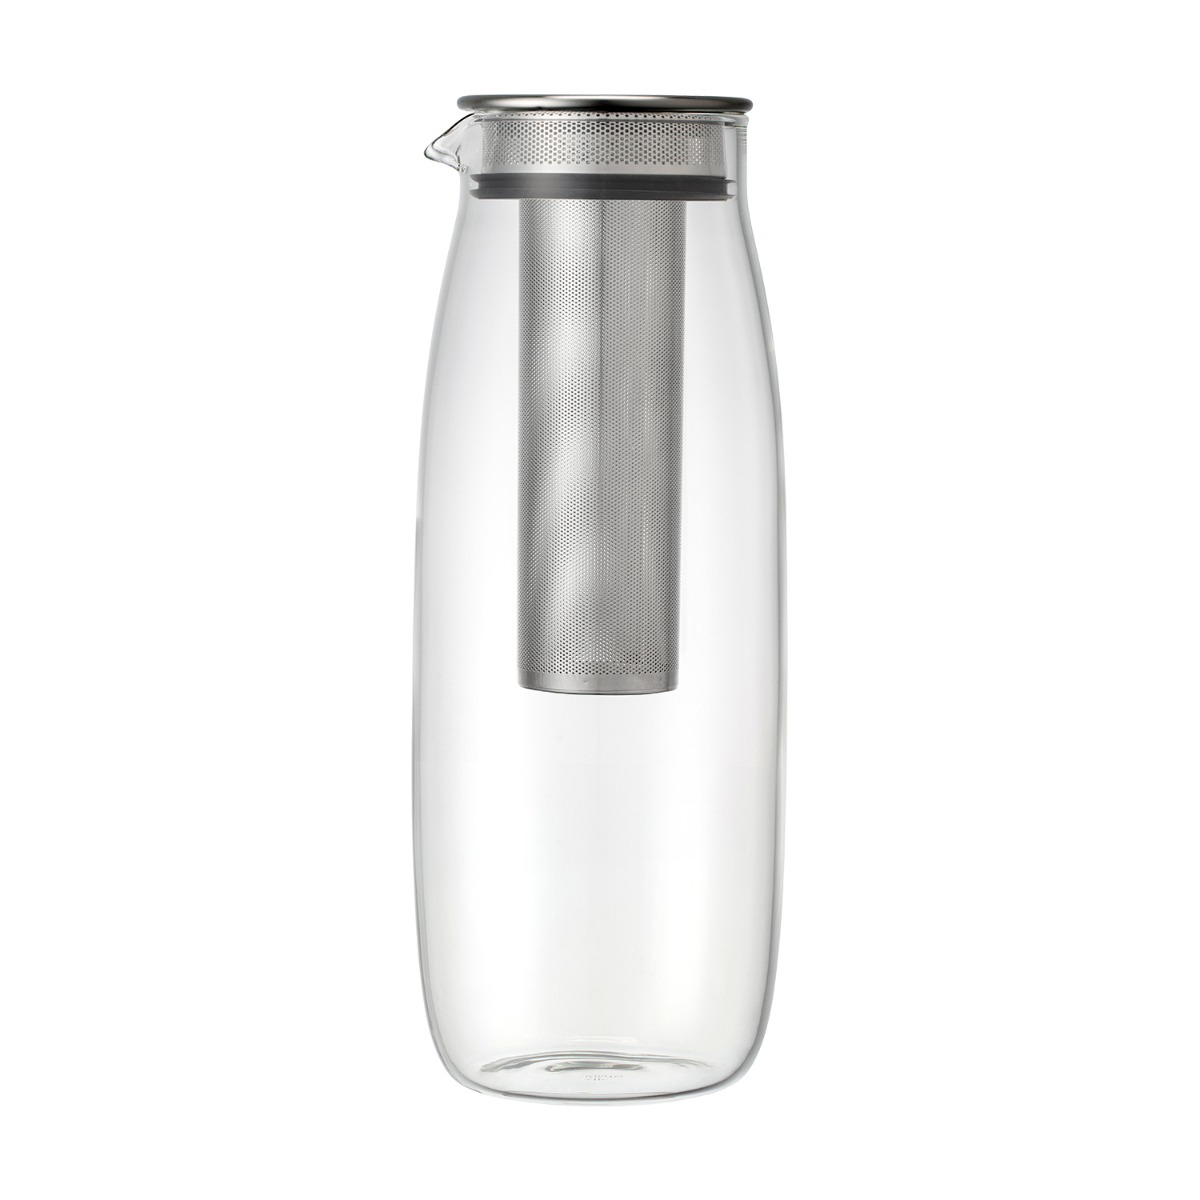 ピッチャー 冷水筒 1.1L UNITEA コールドブリューカラフェ 耐熱ガラス